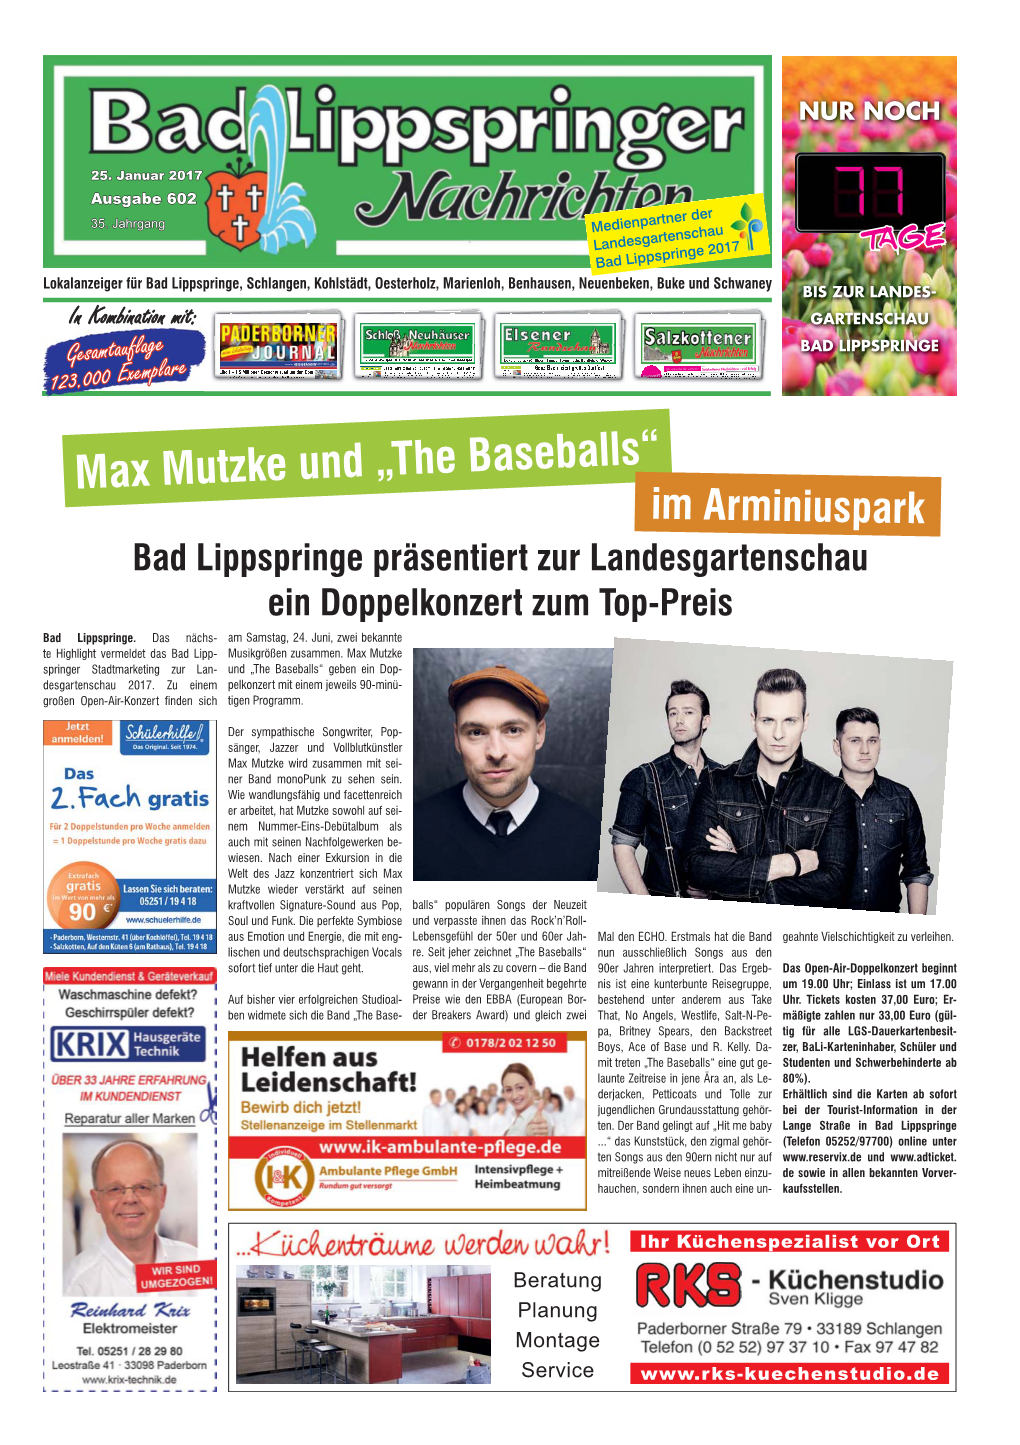 Max Mutzke Und „The Baseballs“ Im Arminiuspark Bad Lippspringe Präsentiert Zur Landesgartenschau Ein Doppelkonzert Zum Top-Preis Bad Lippspringe